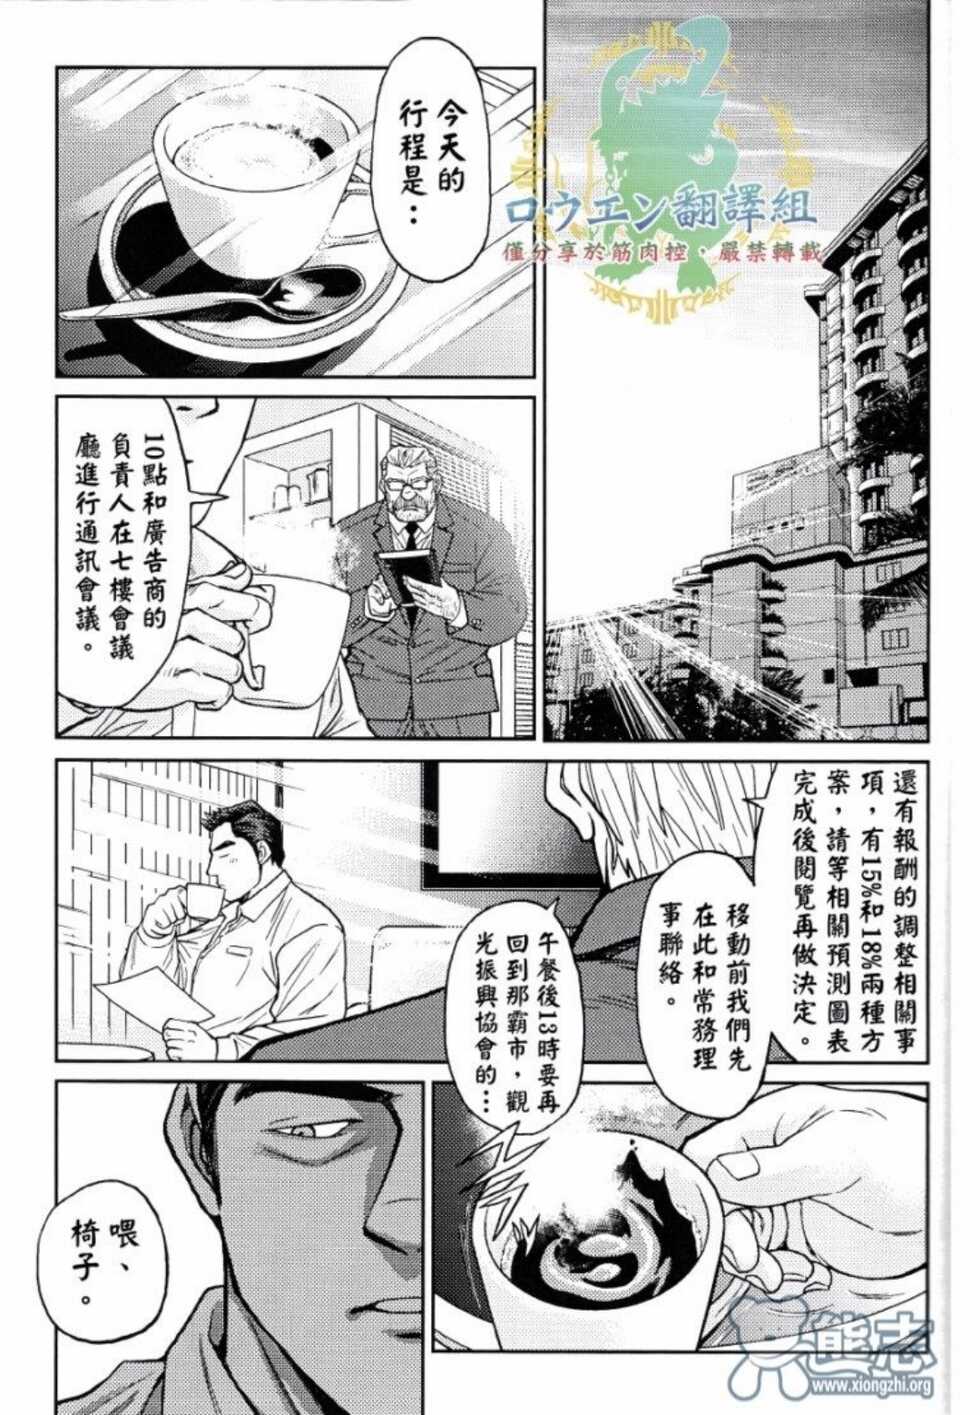 冲绳奴隶岛 02 - Page 20